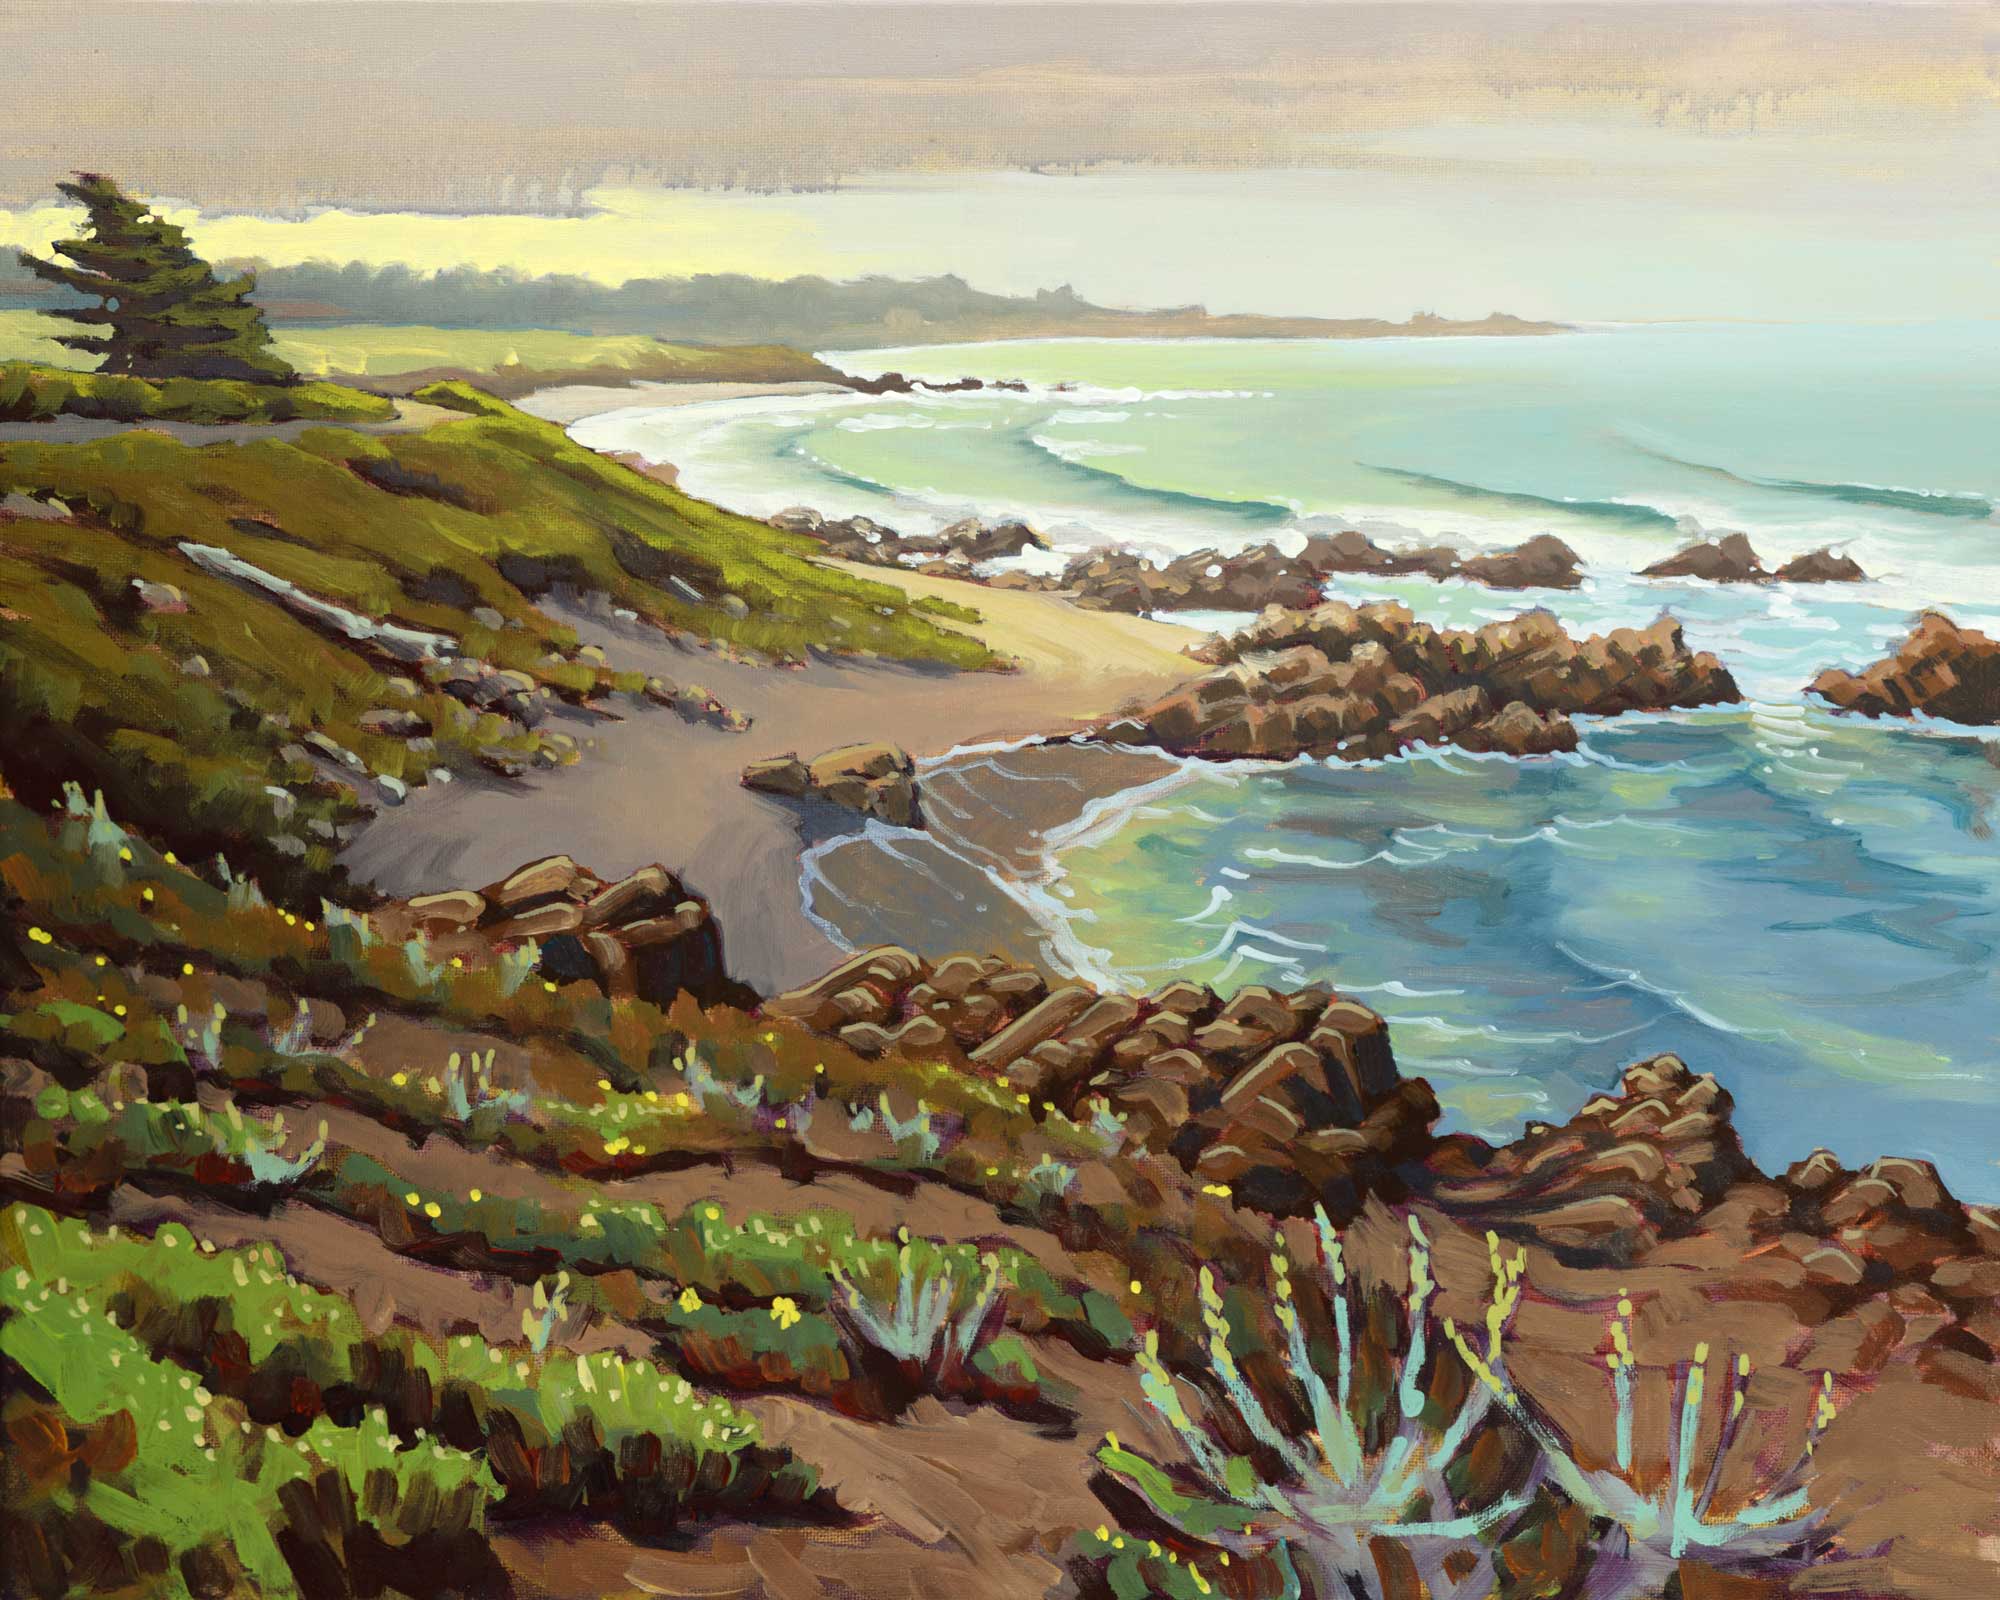 Plein air artwork from Asilomar beach near Pacific Grove on the Monterey coast of California